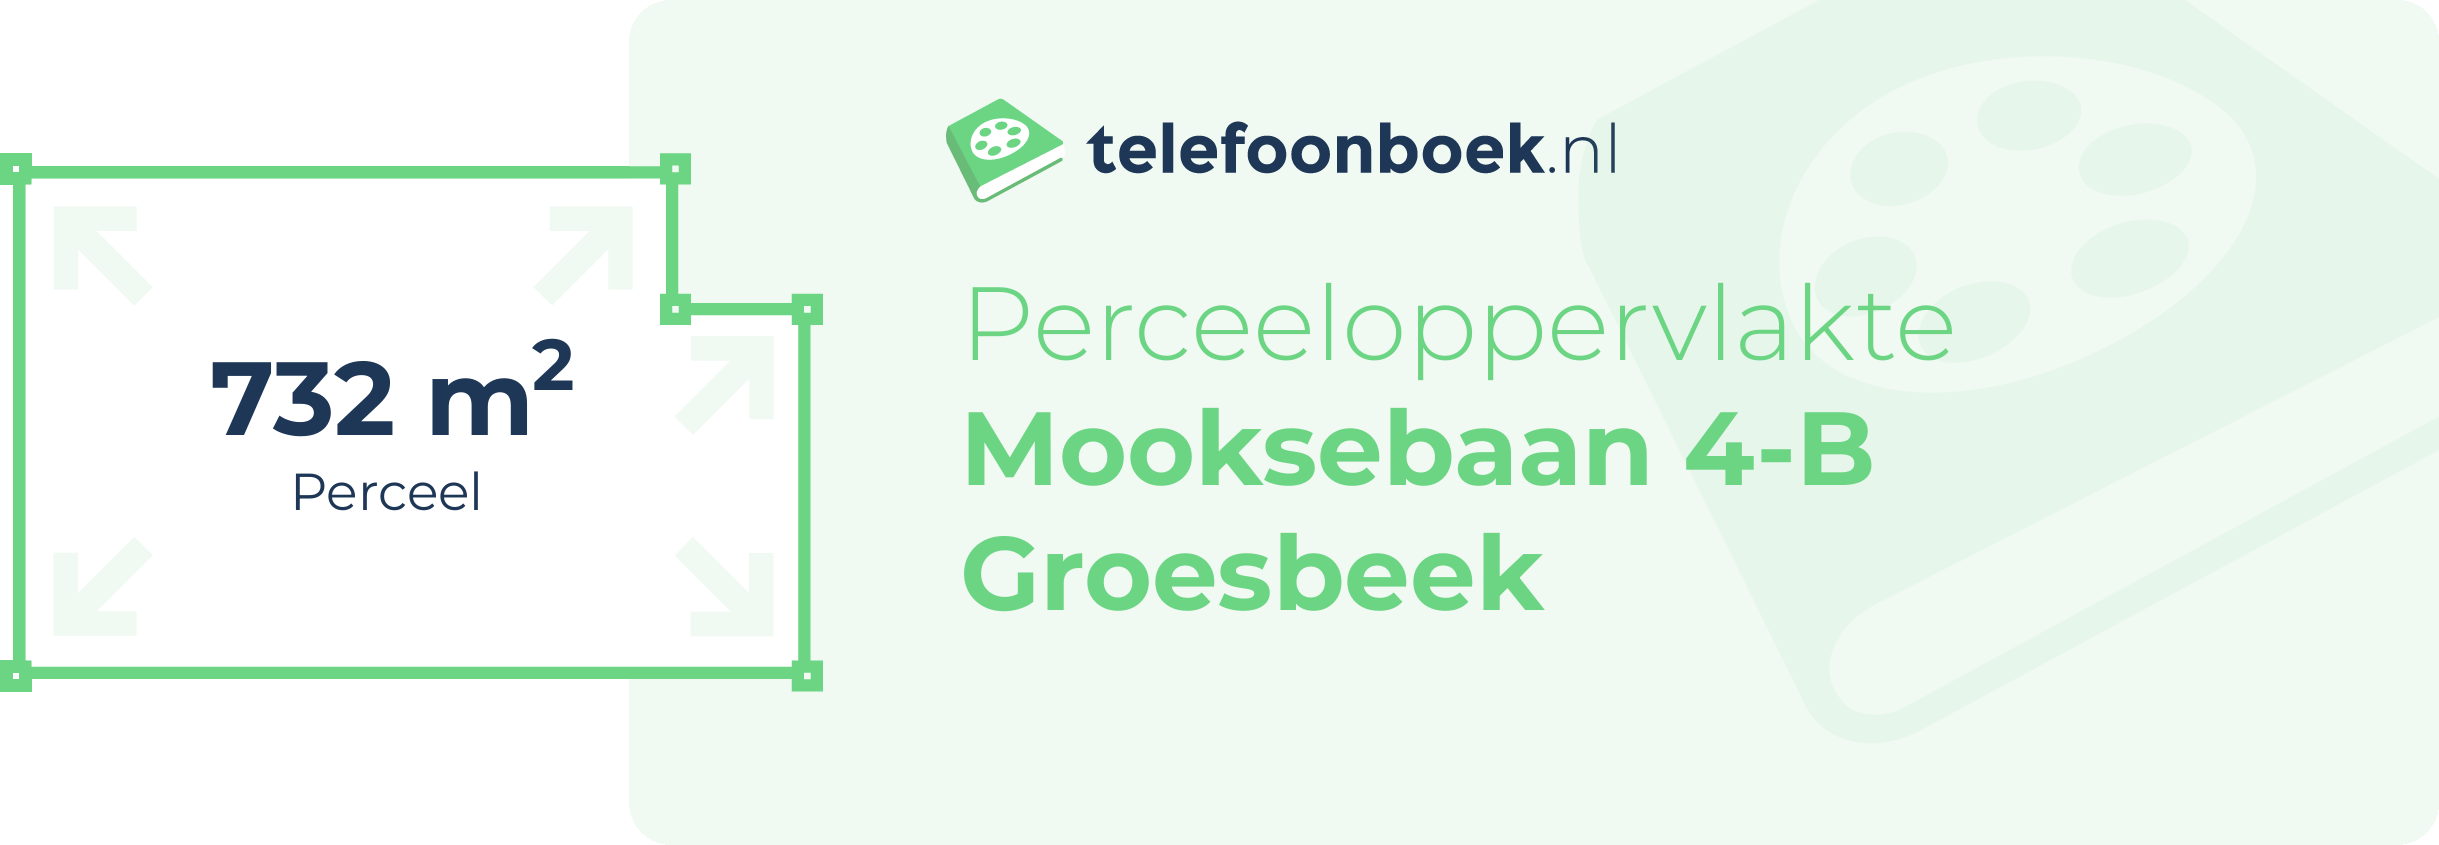 Perceeloppervlakte Mooksebaan 4-B Groesbeek